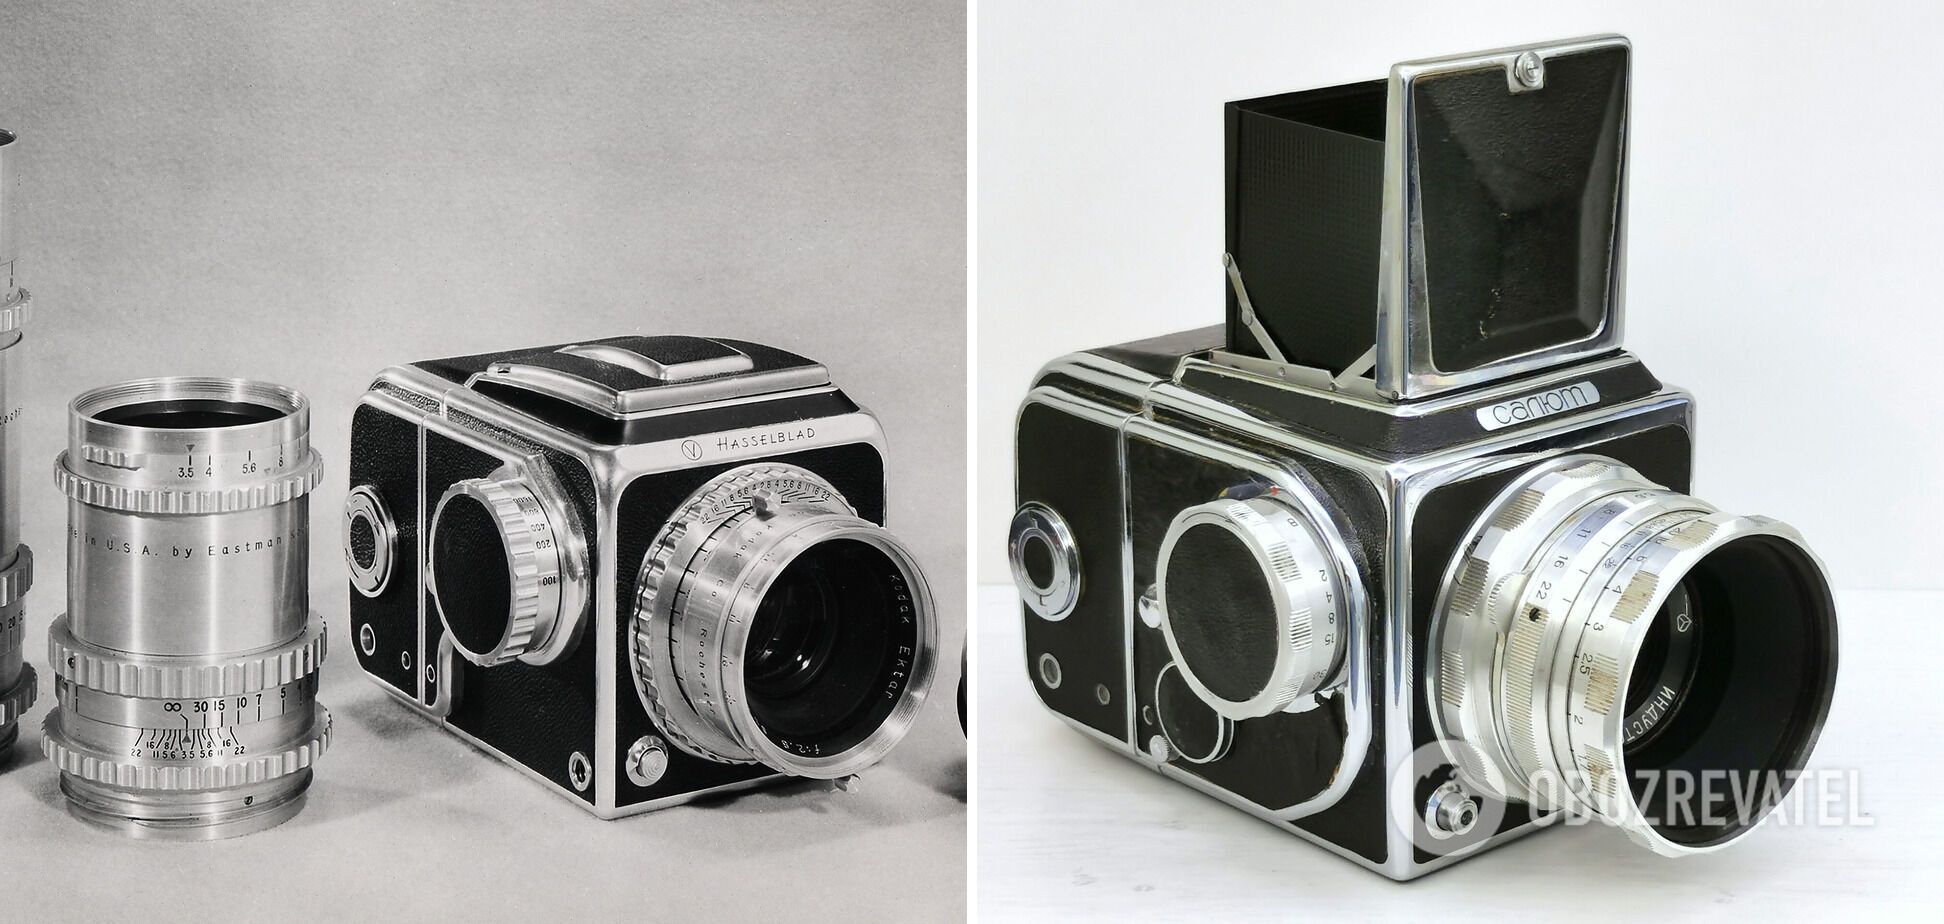 Зліва - фотоапарат "Hasselblad 1600f", а справа "Салют".